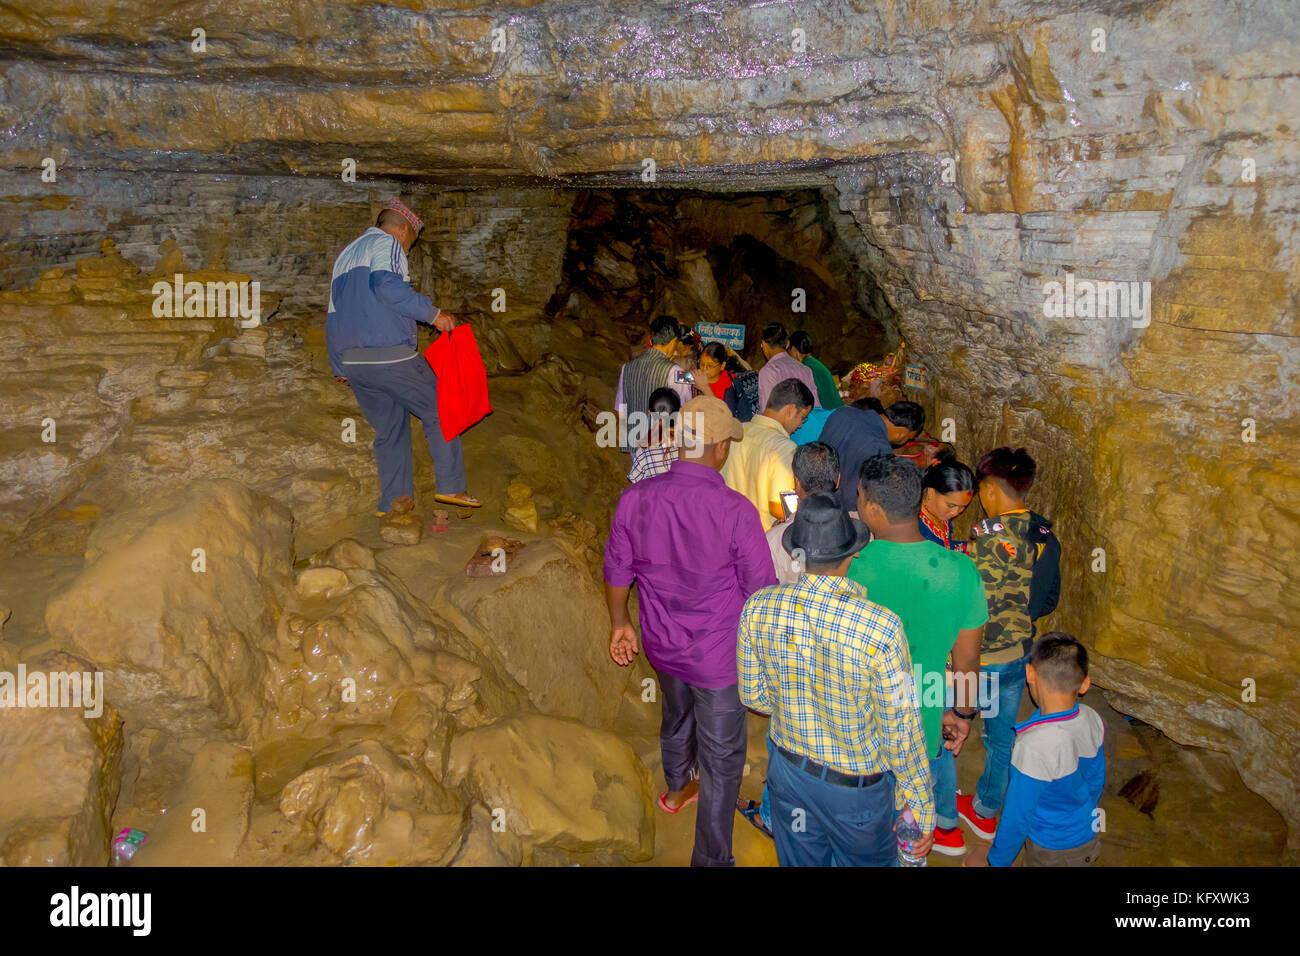 Pokhara, nepal - Settembre 12, 2017: gruppo non identificato di persone a piedi e per scattare foto all'interno della grotta di bat, in lingua nepalese, è chiamato chameri gufa. la grotta è fatta di calcare e di habitat di pipistrelli oltre la caverna e dei massimali Foto Stock